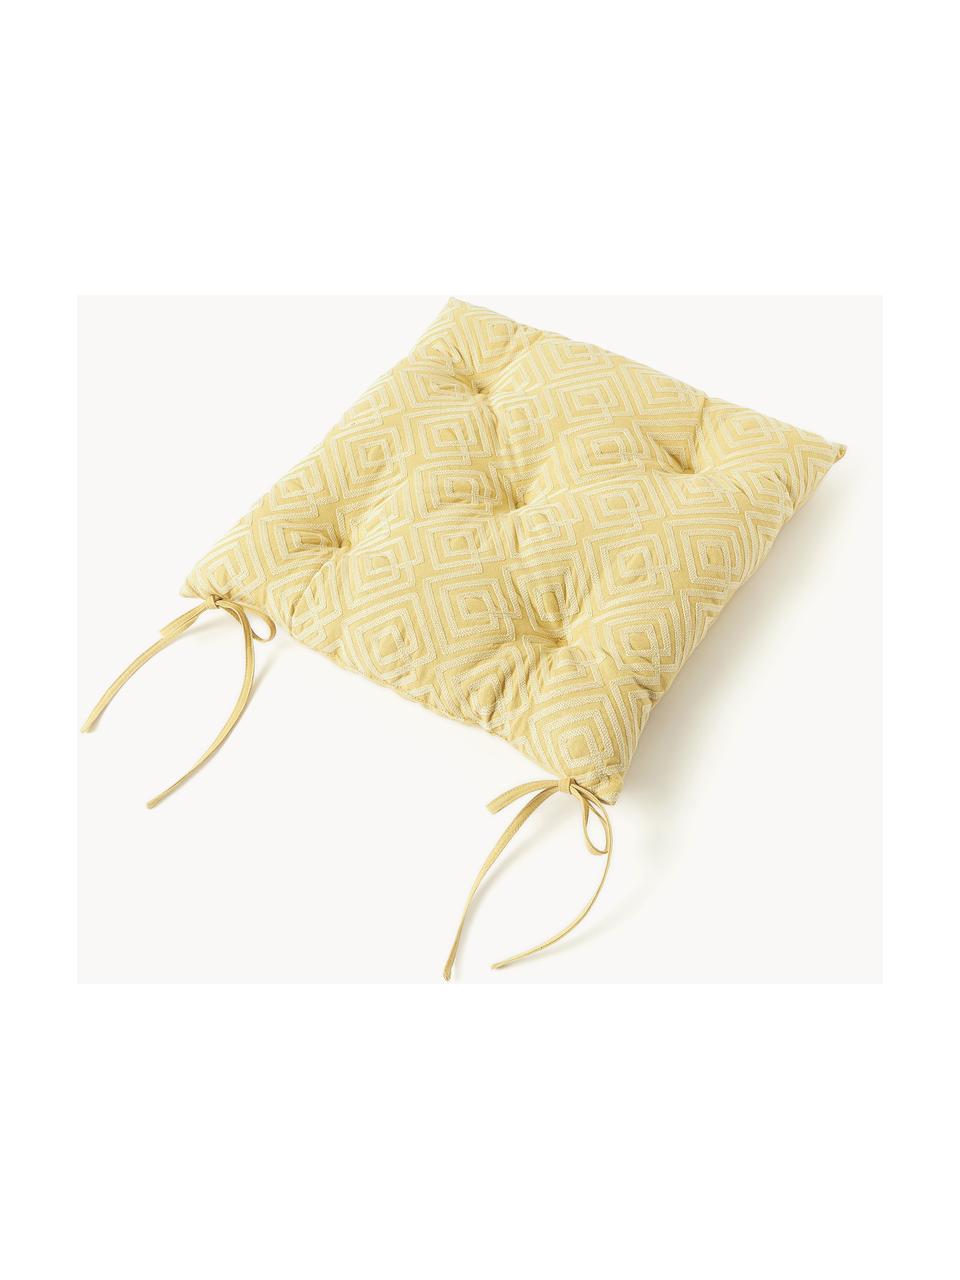 Poduszka na krzesło z bawełny Sevil, Tapicerka: 100% bawełna, Ochrowy, jasny żółty, S 40 x D 40 cm